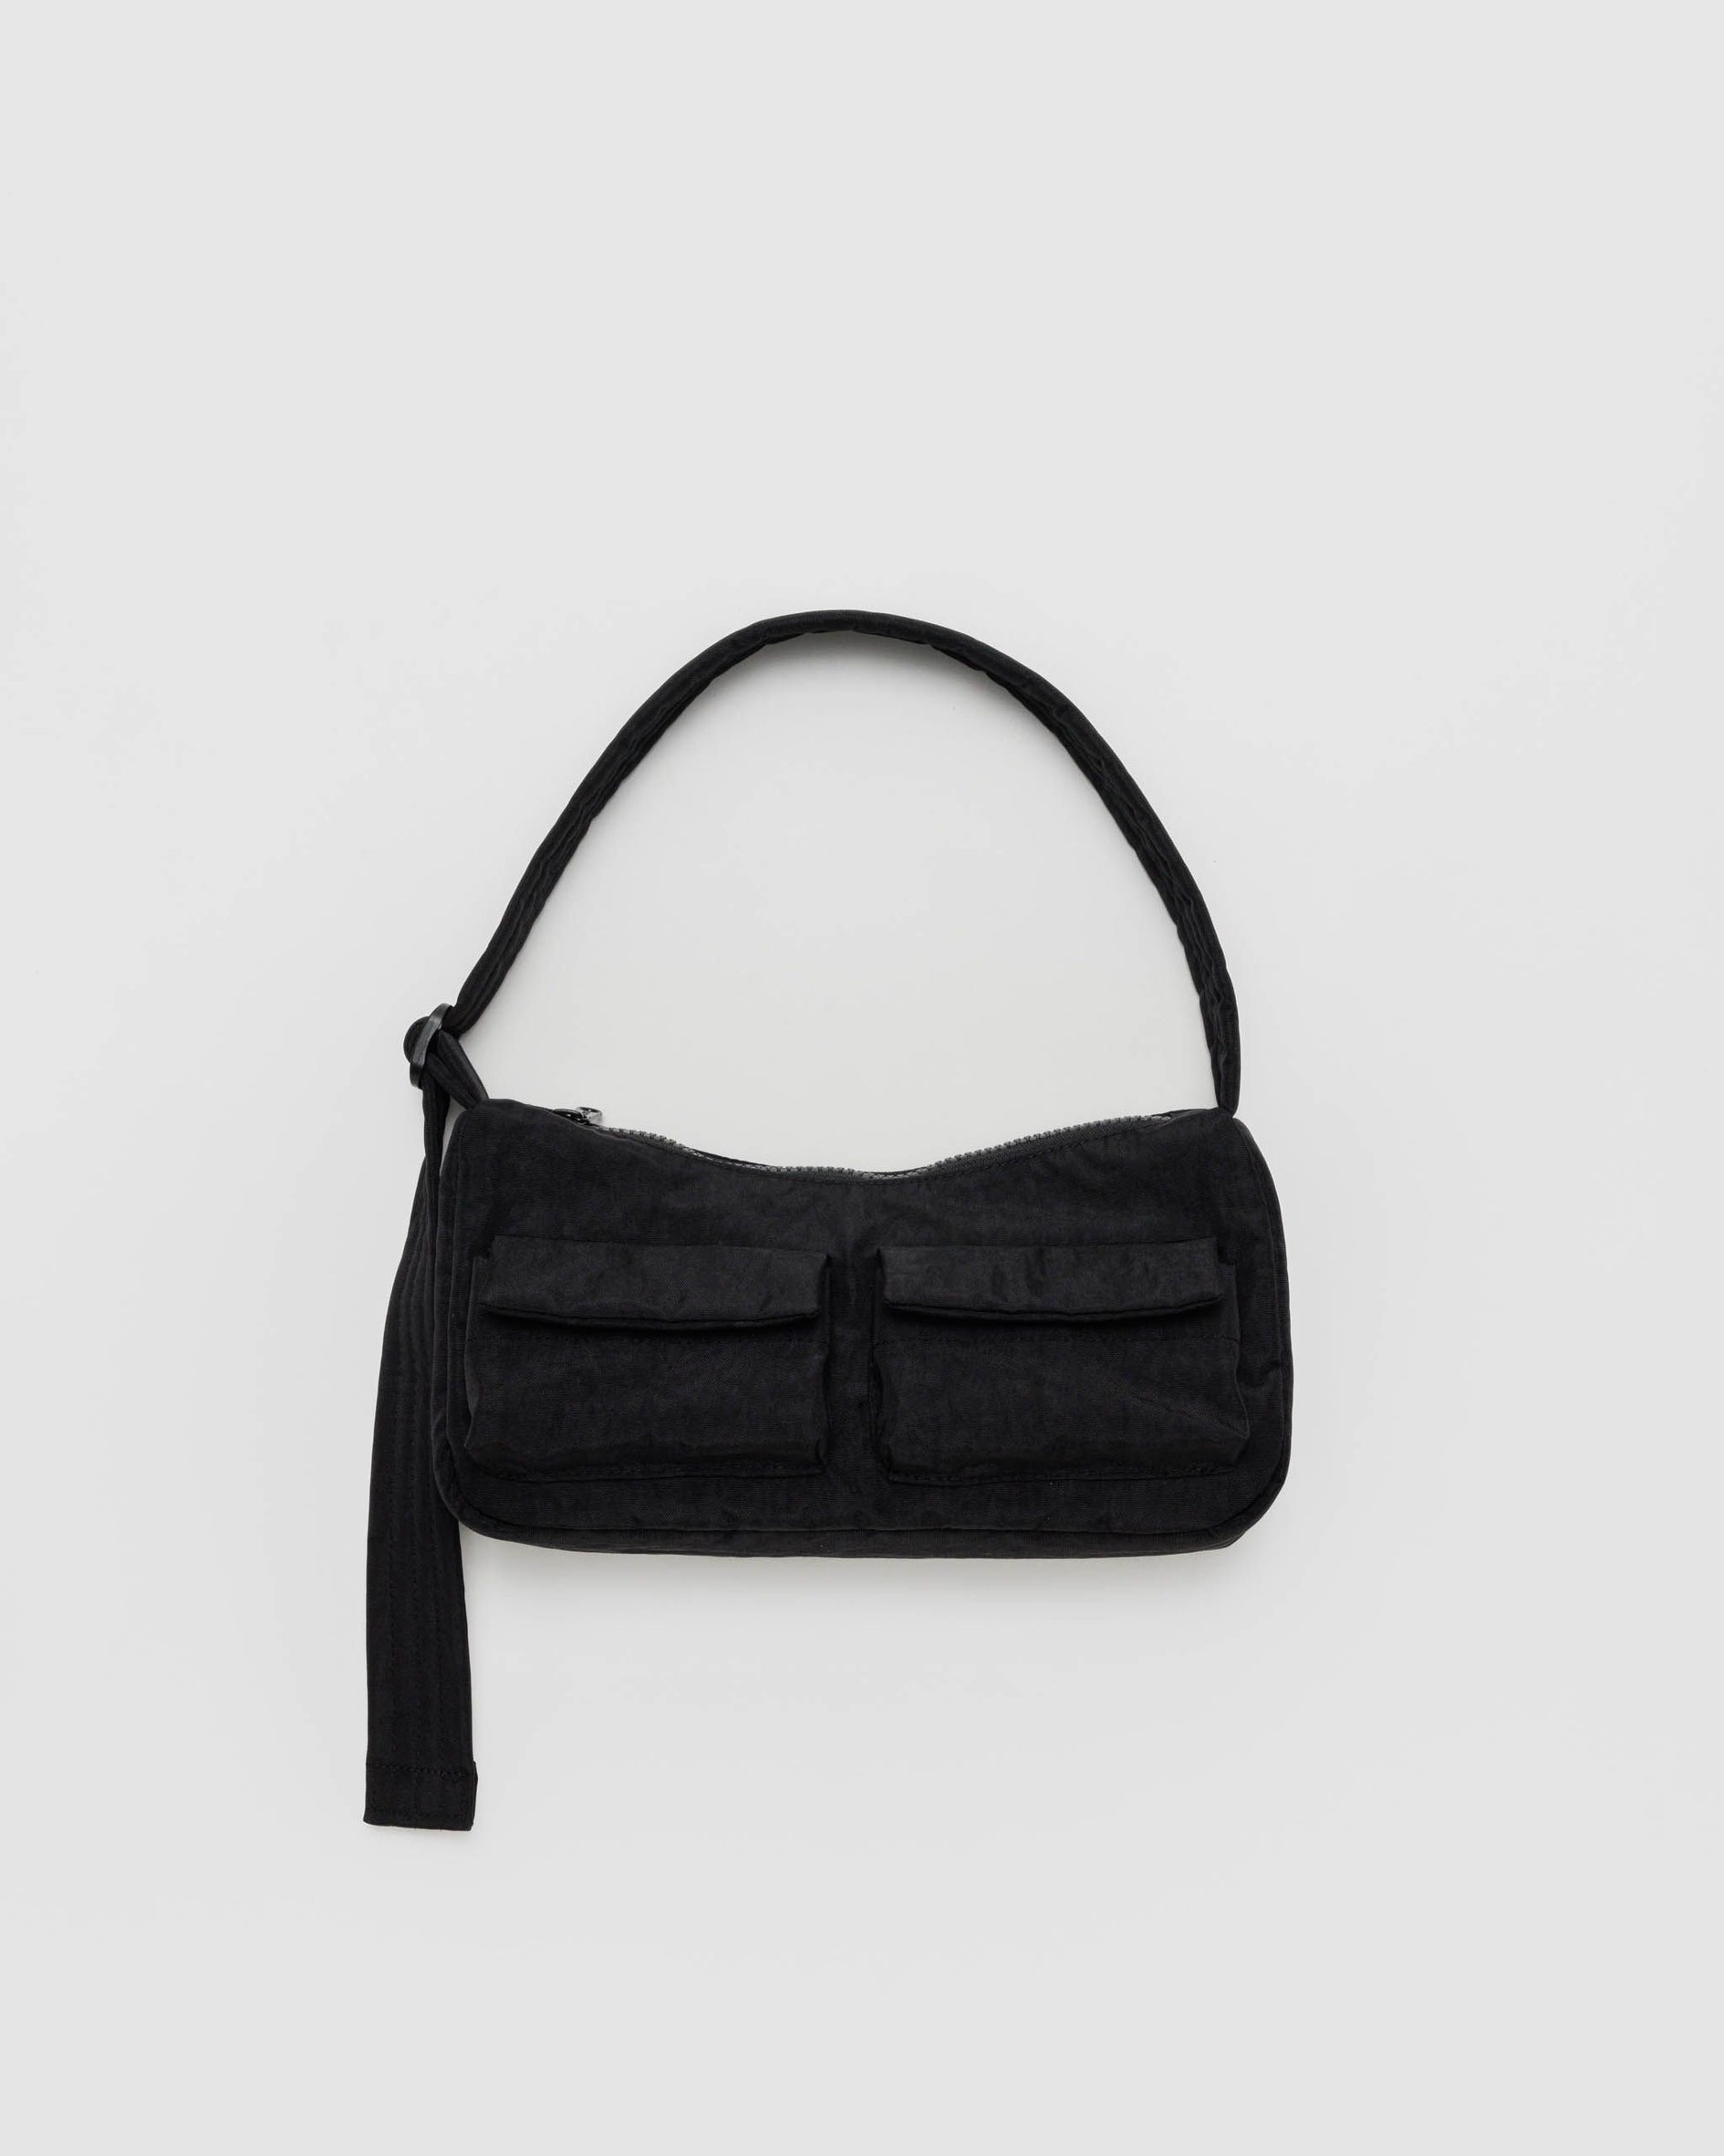 Cargo Shoulder Bag, Black